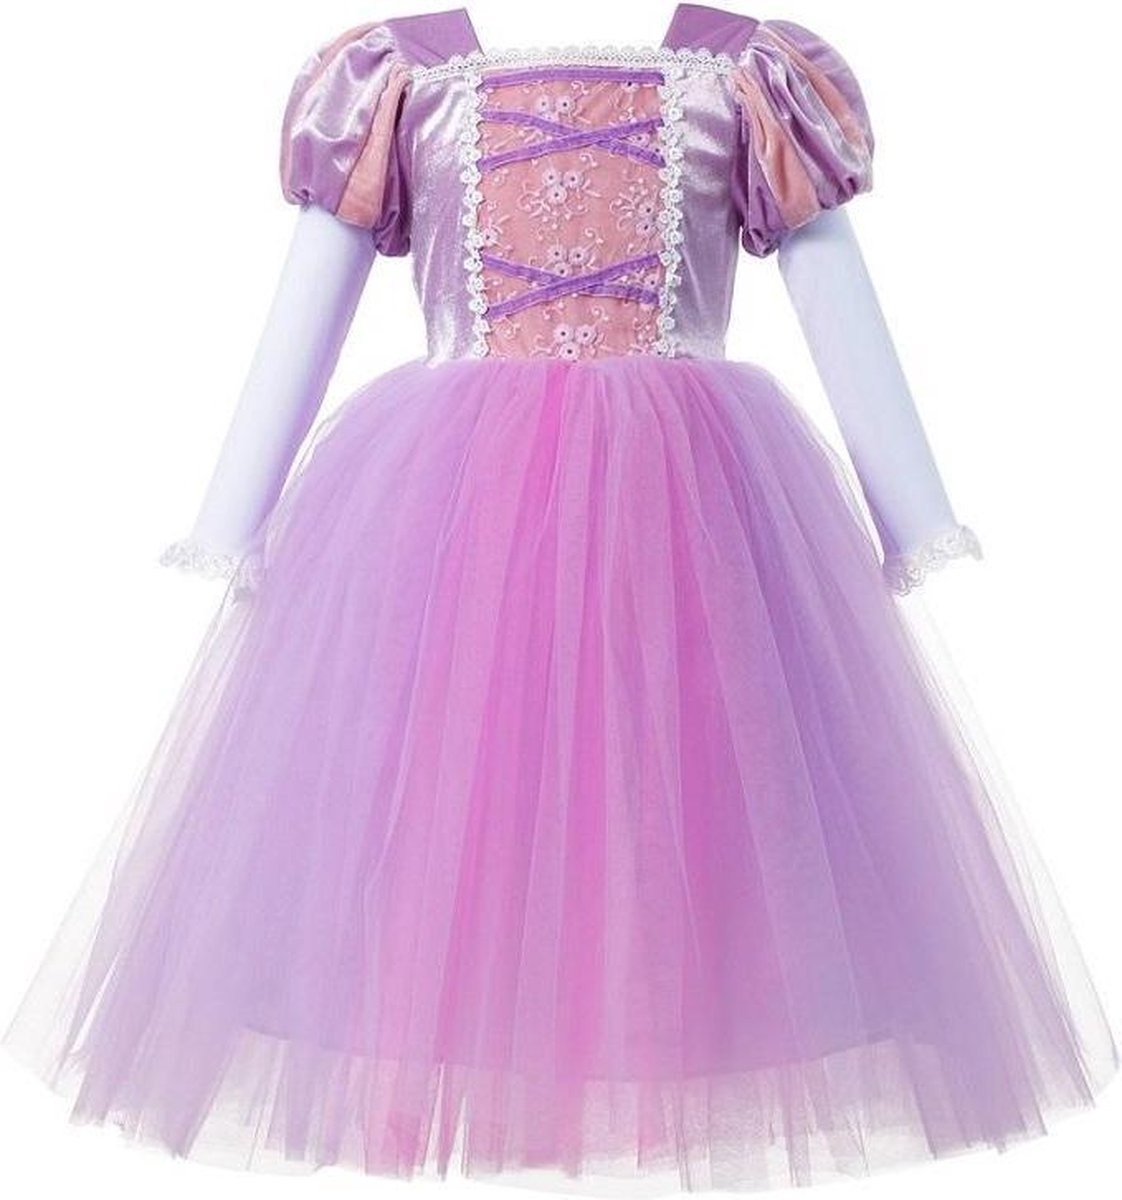 Prinses - Luxe prinses Rapunzel jurk - Prinsessenjurk - Verkleedkleding - Maat 122/128 (130) 6/7 jaar